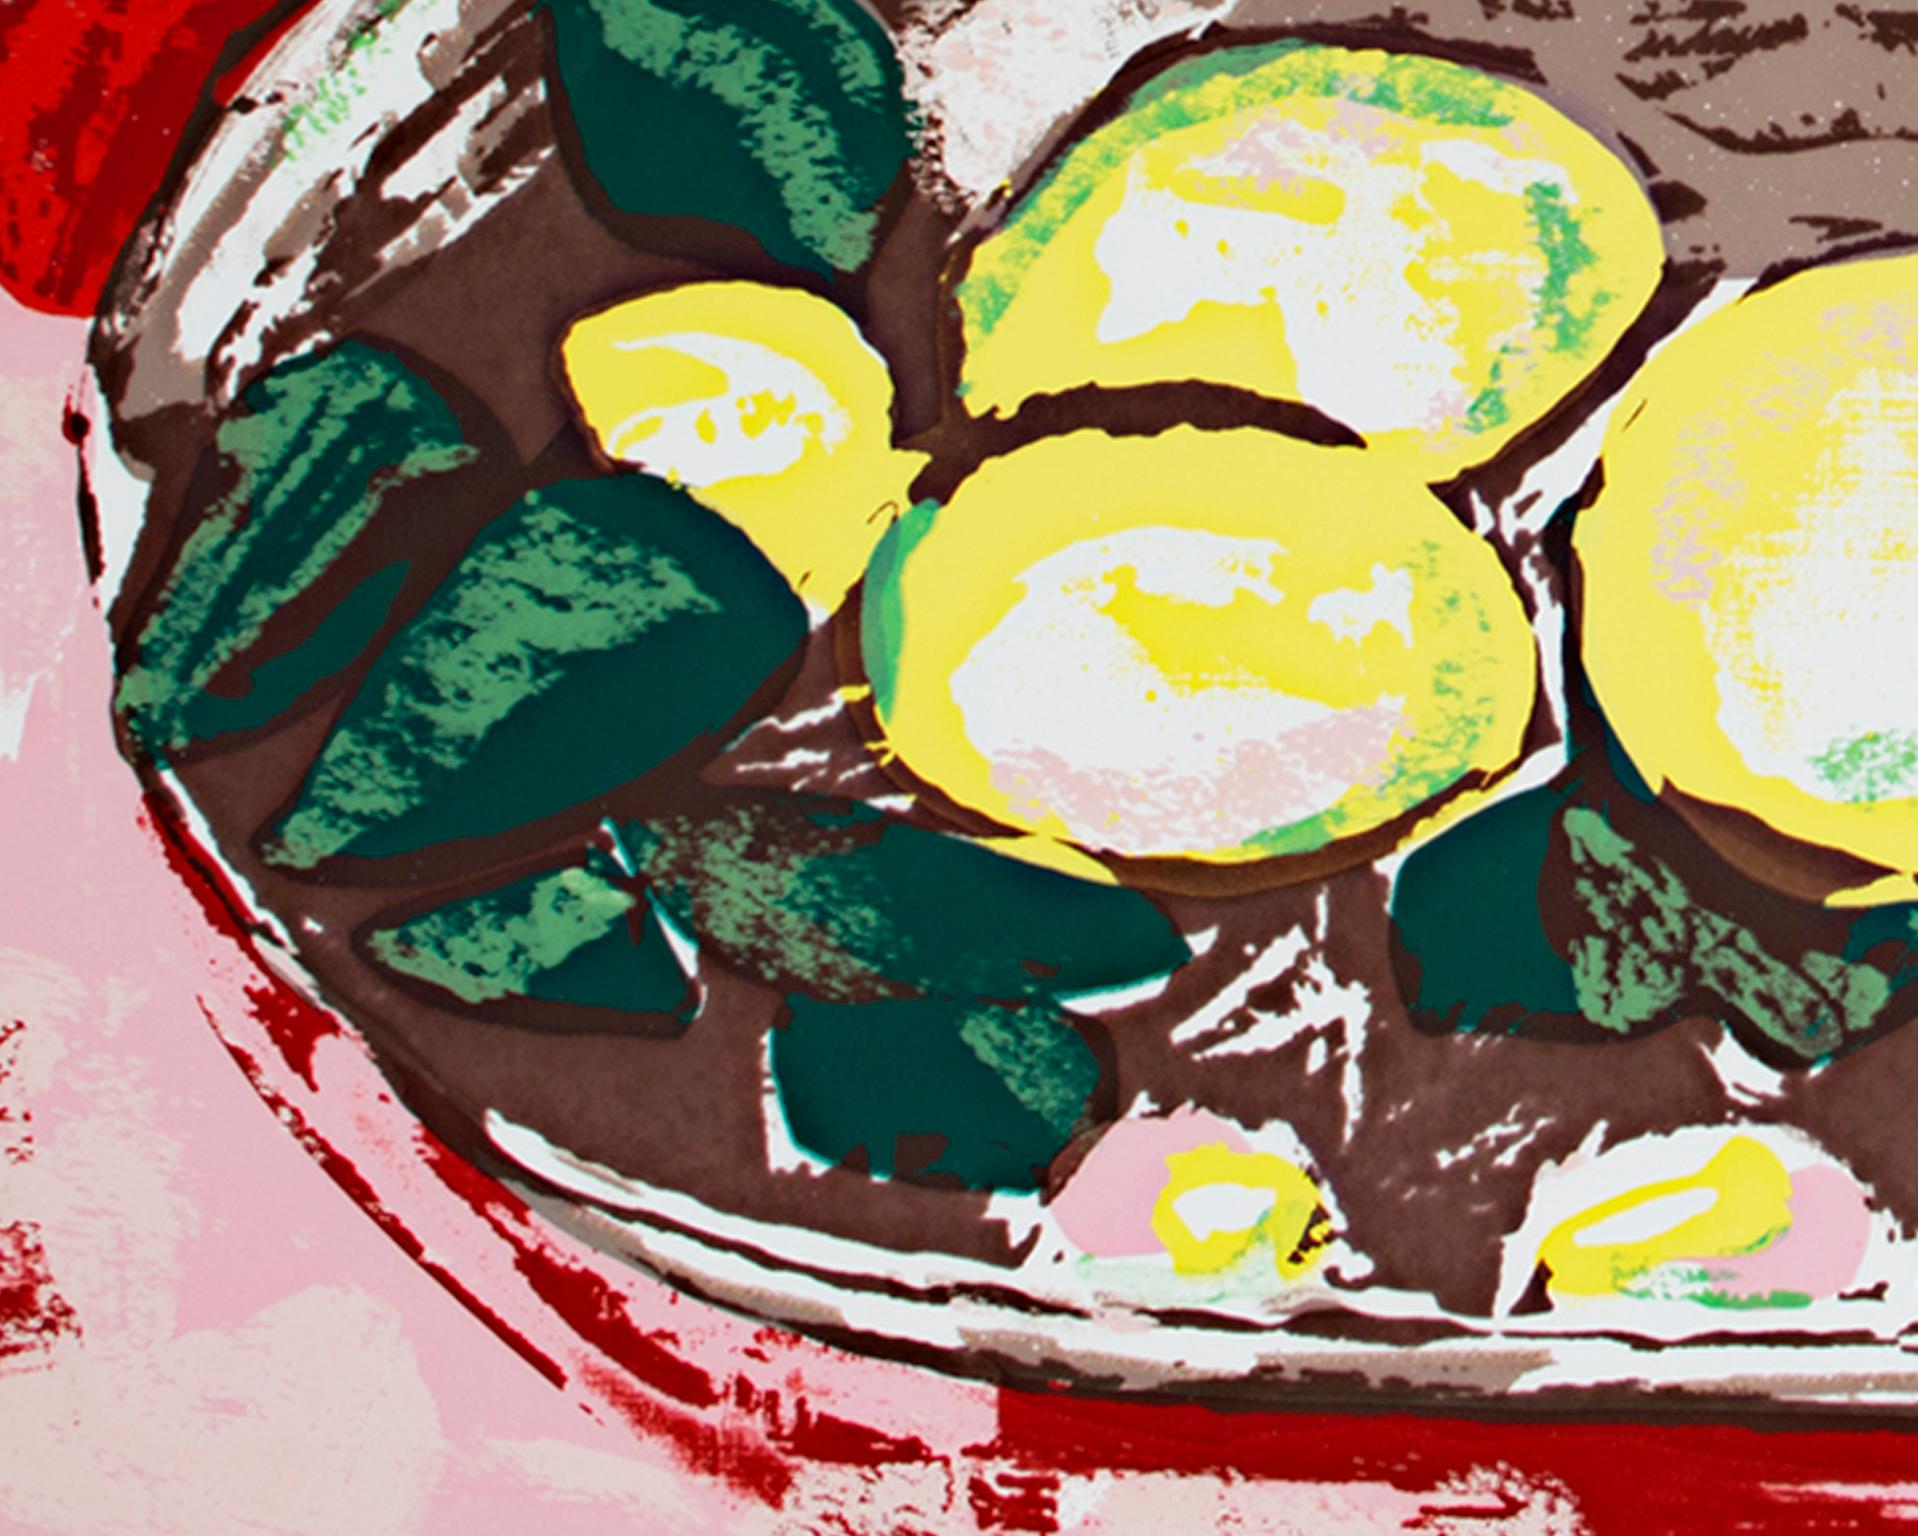 « Légons sur une assiette en étain », émail porcelaine sur acier d'après Henri Matisse - Moderne Art par (after) Henri Matisse